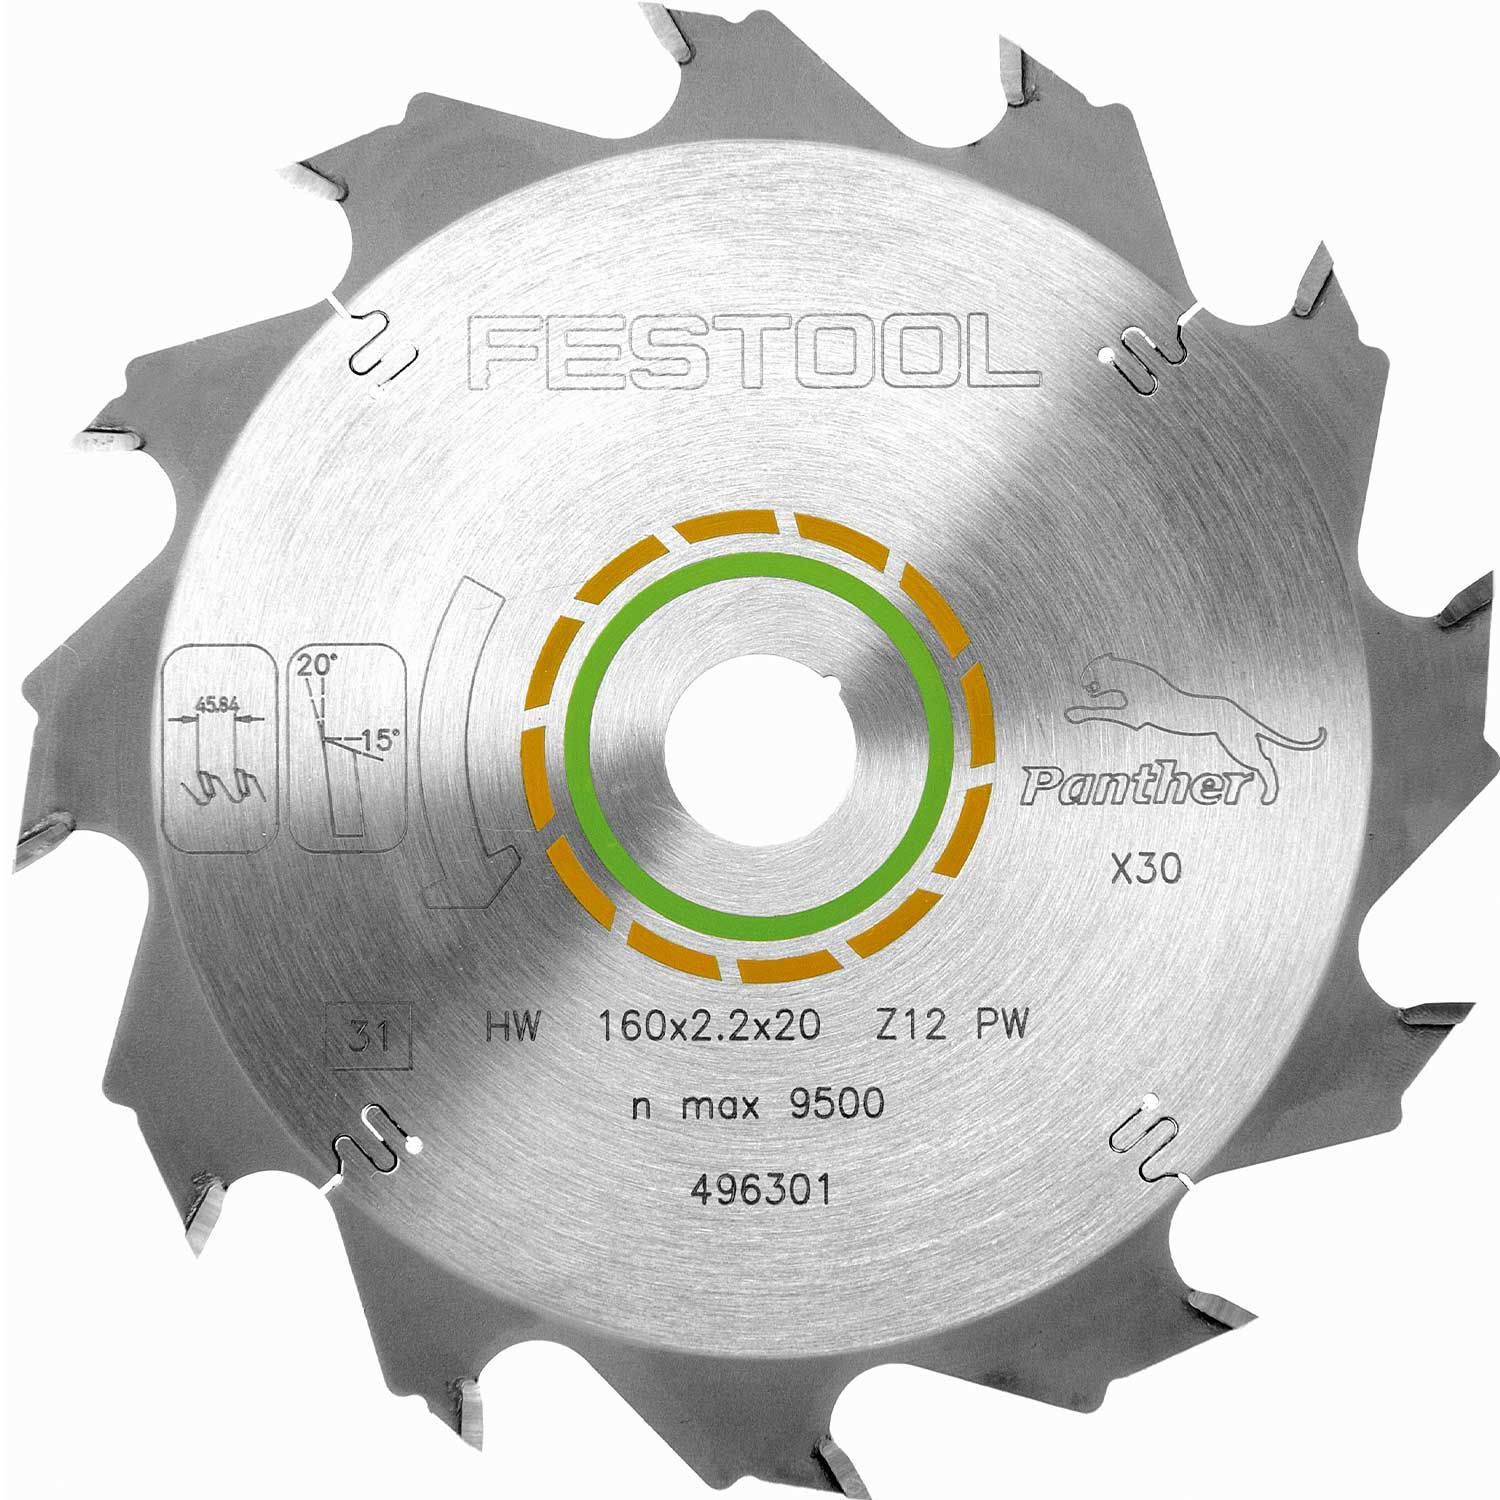 Пильный диск Festool HW 160x2,2x20 PW12 496301 пильный диск для алюминия и полимерных материалов festool 160x2 2x20 tf52